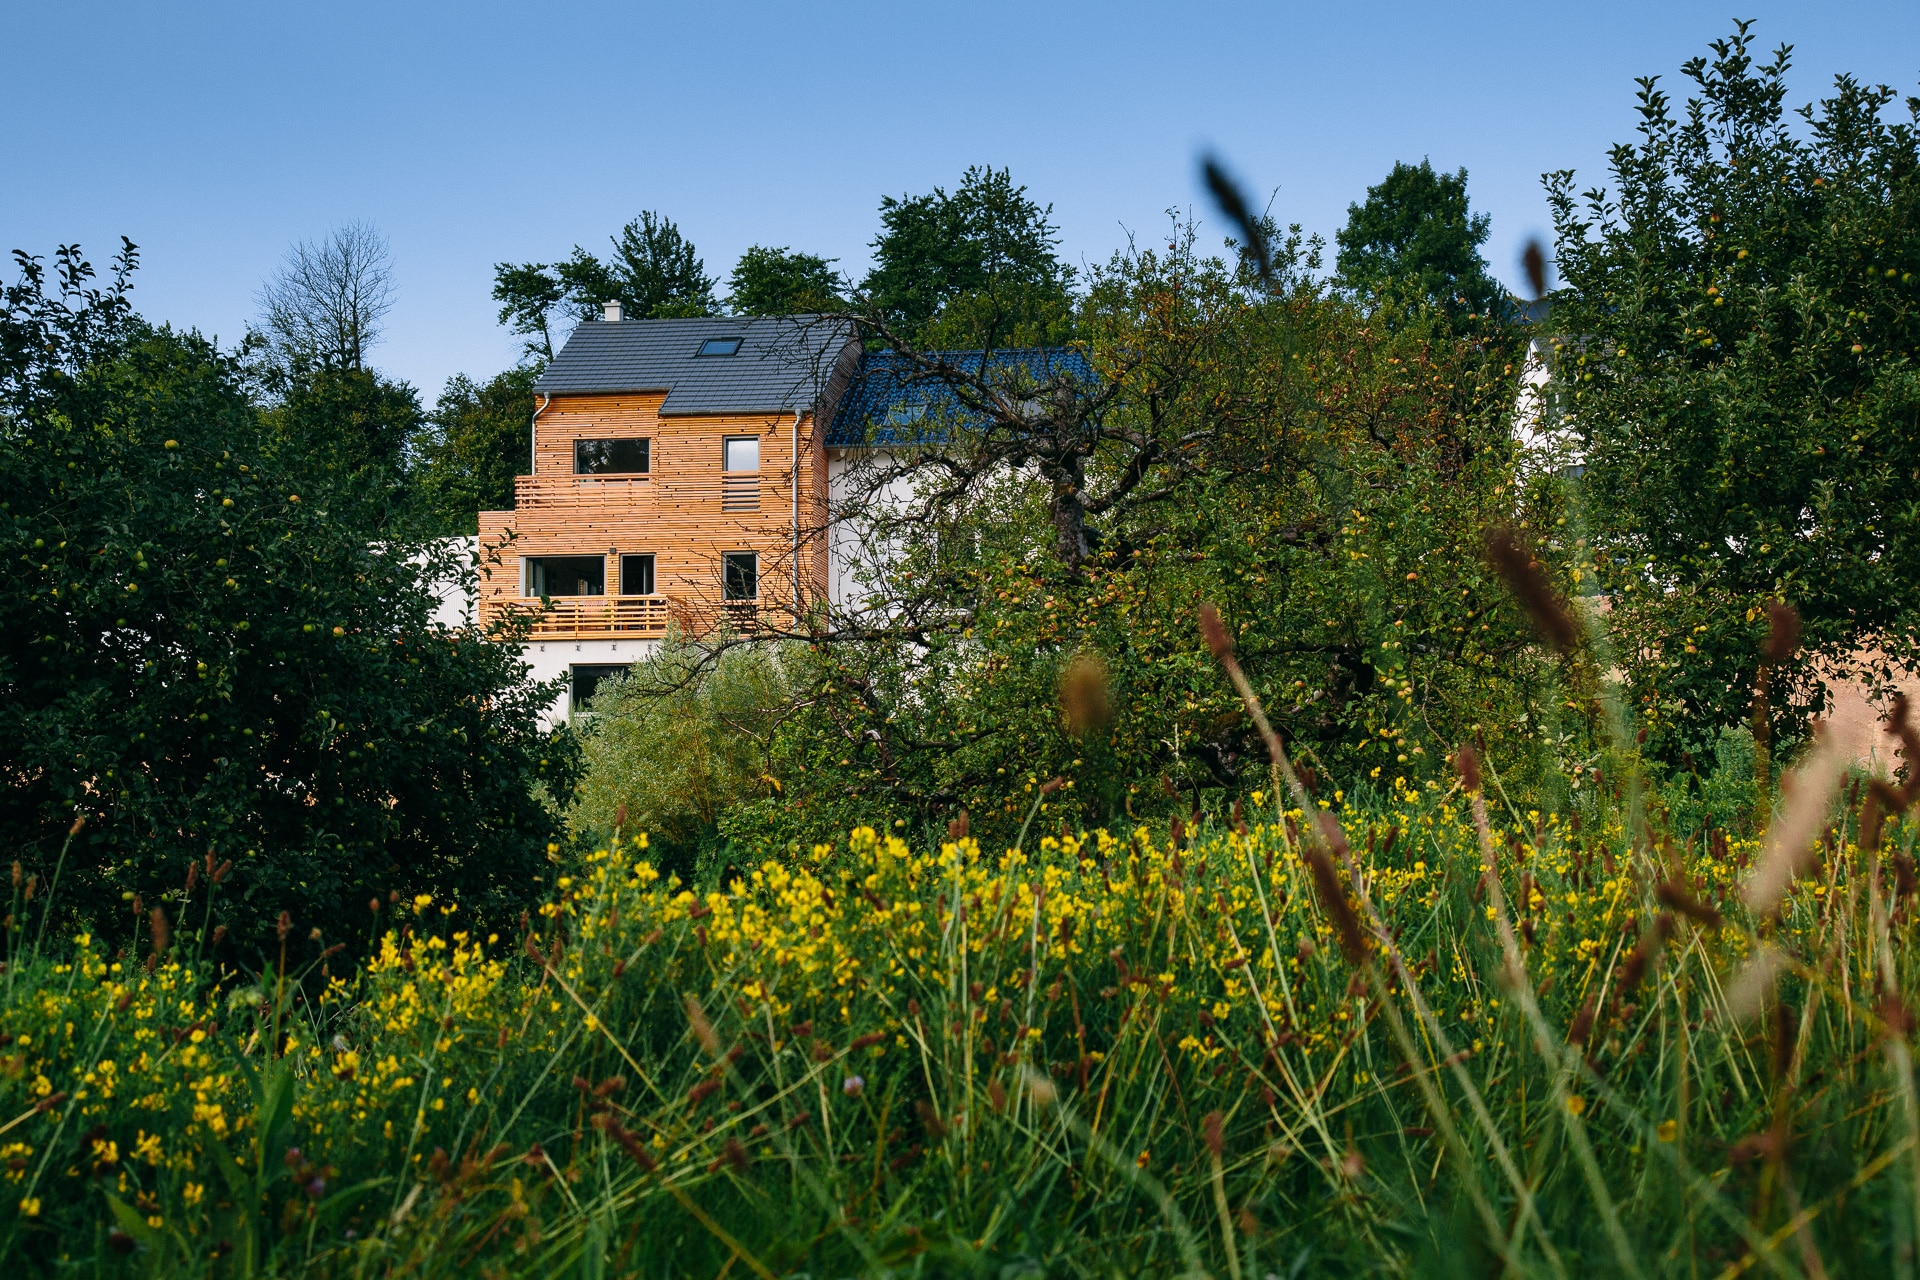 Holzhaus Sinzheim: Ein Zuhause aus Holz in Split-Level-Bauweise / Bildquelle: uvw-fotografie